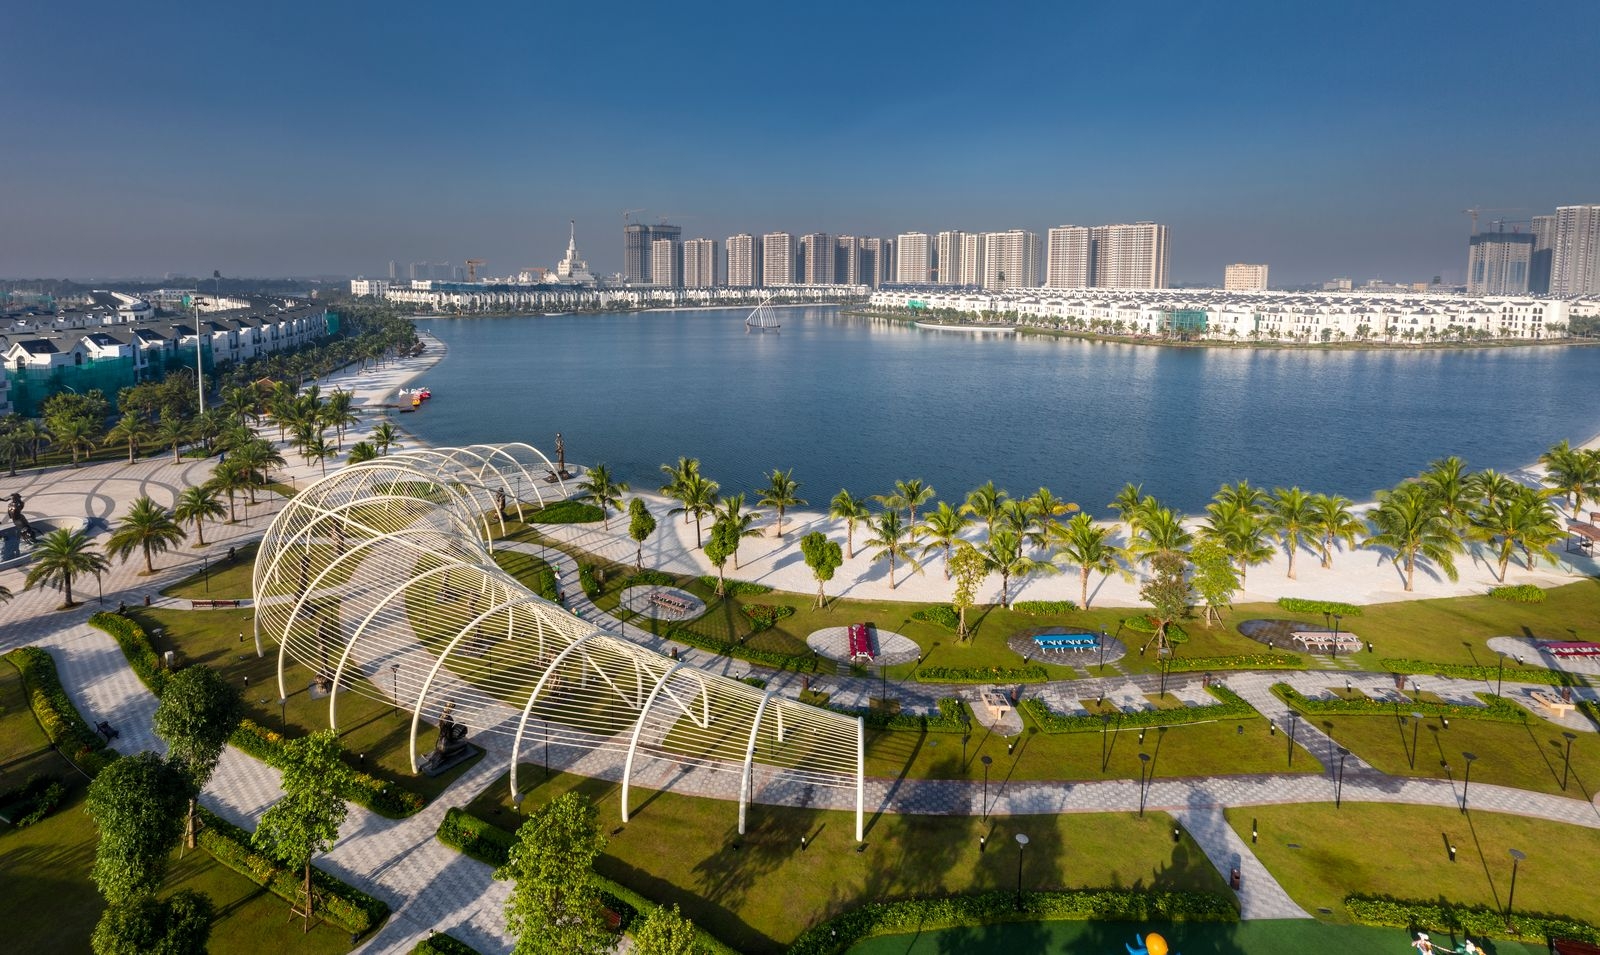 Báo quốc tế: Ocean City là điểm đến hàng đầu cho xu hướng sống xanh của công dân toàn cầu